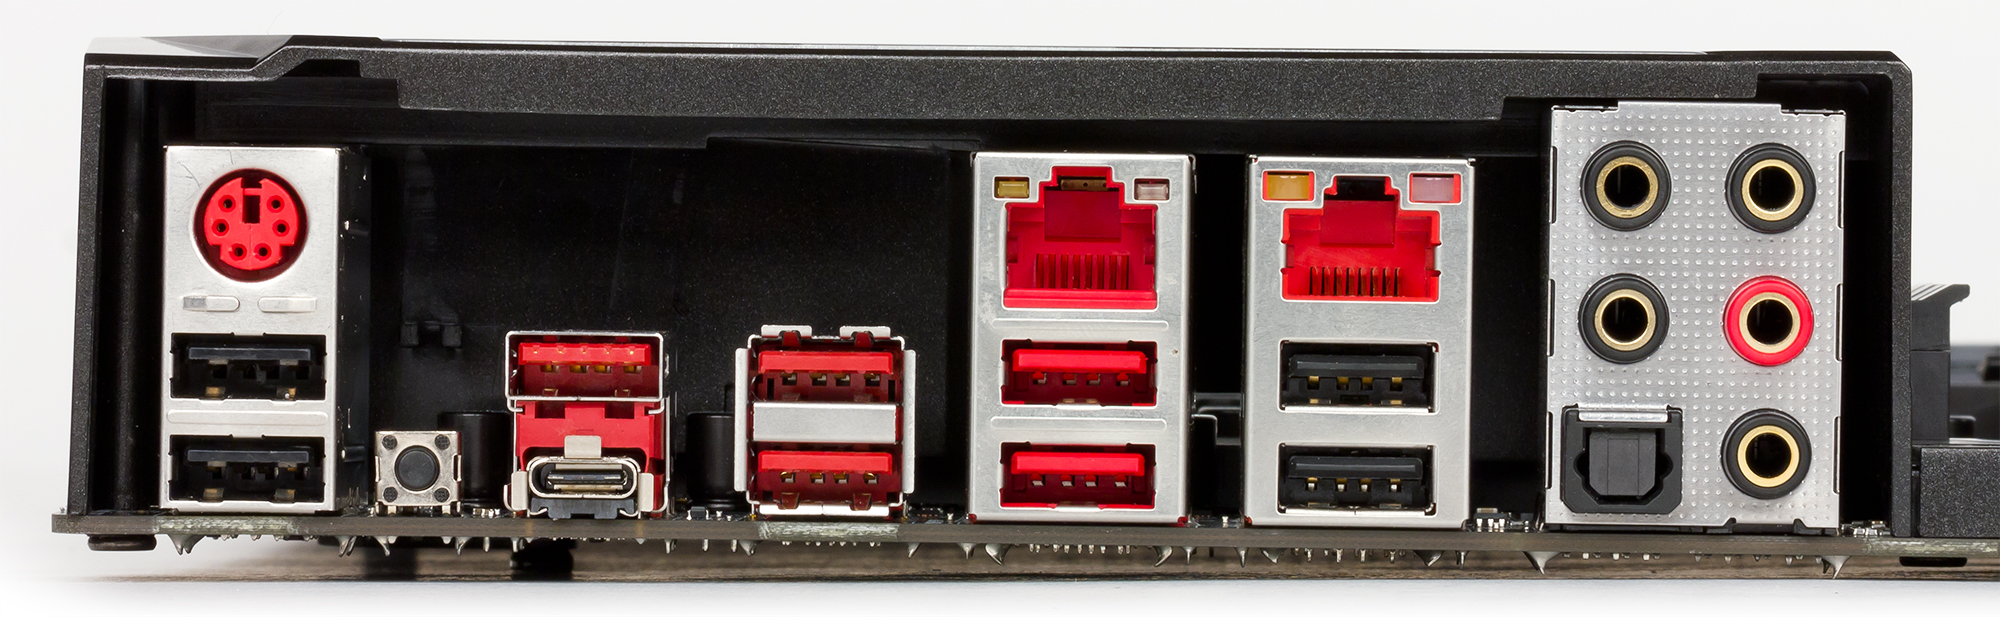 X99 reg. Жёлтый USB разъём на задней панели материнской платы. Интерфейсы задней панели современного ПК. Материнская плата MSI x670. Шкаф с розетками EC-MSI-x5de495.